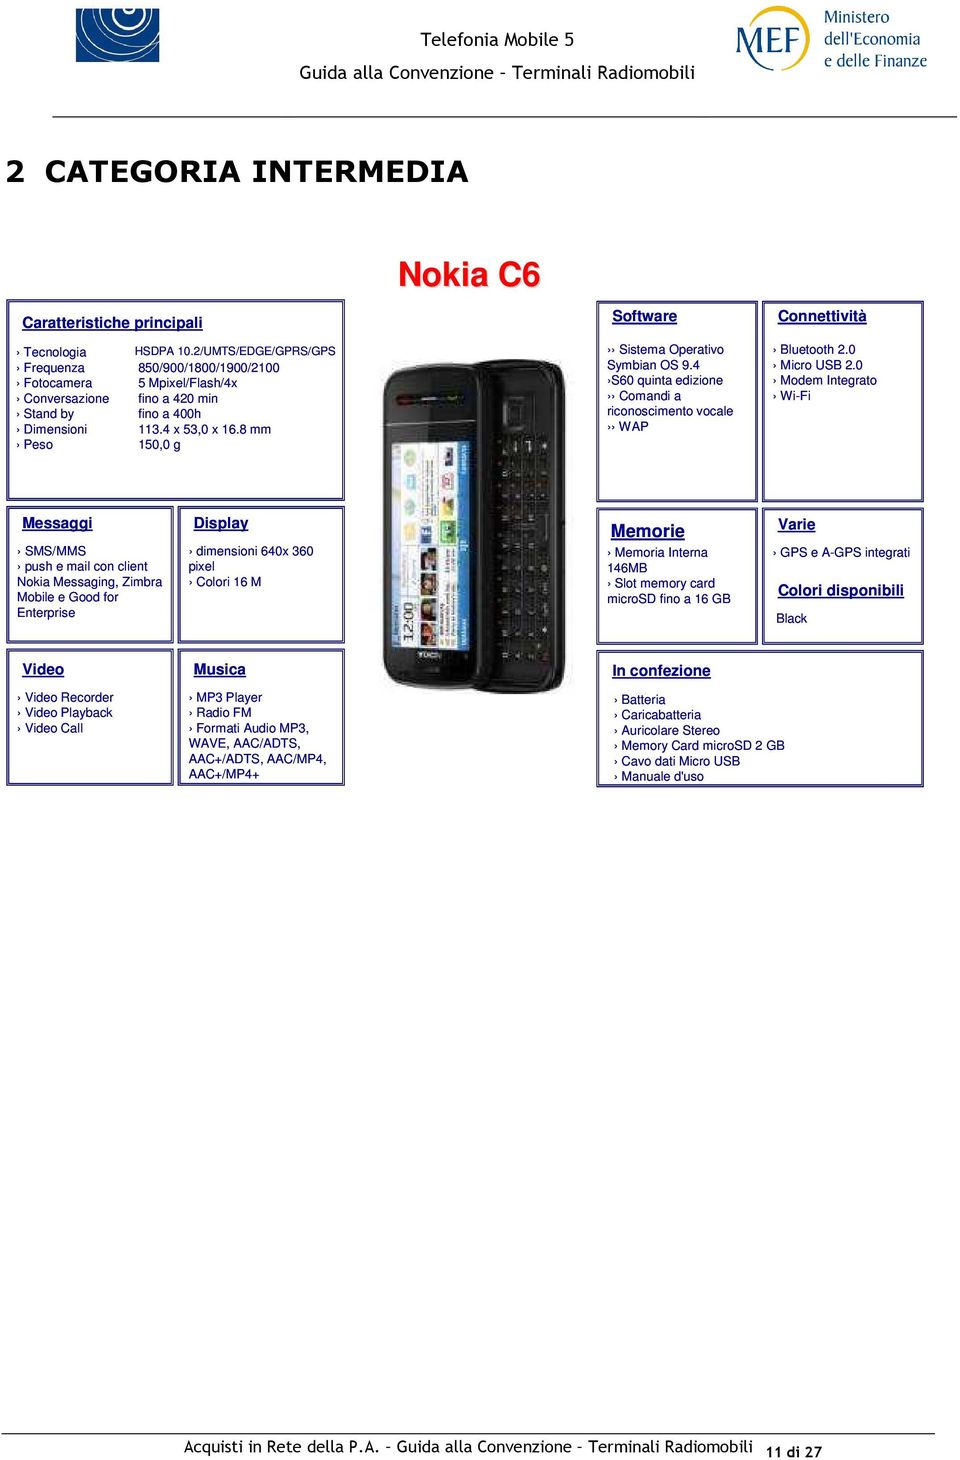 0 Modem Integrato Wi-Fi SMS/MMS push e mail con client Nokia Messaging, Zimbra Mobile e Good for Enterprise dimensioni 640x 360 pixel Colori 16 M Memoria Interna 146MB Slot memory card microsd fino a